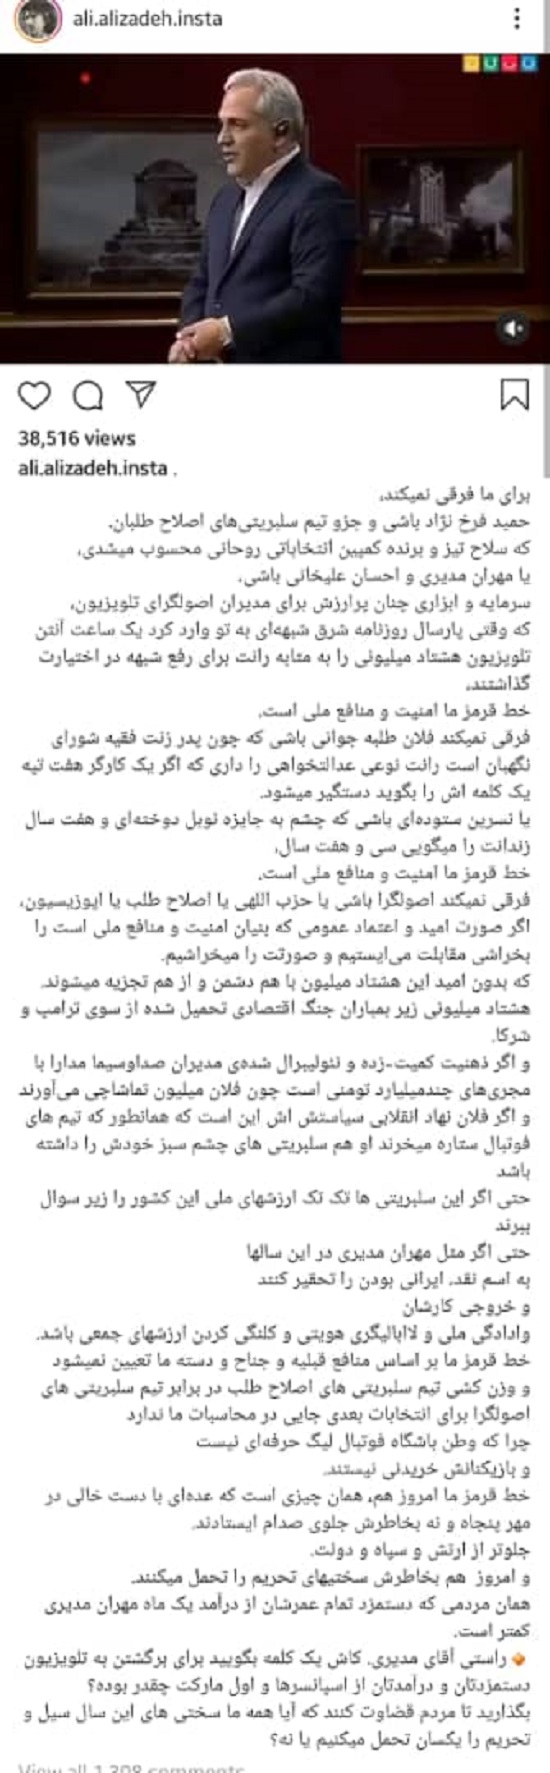 حمله علی علیزاده به مهران مدیری